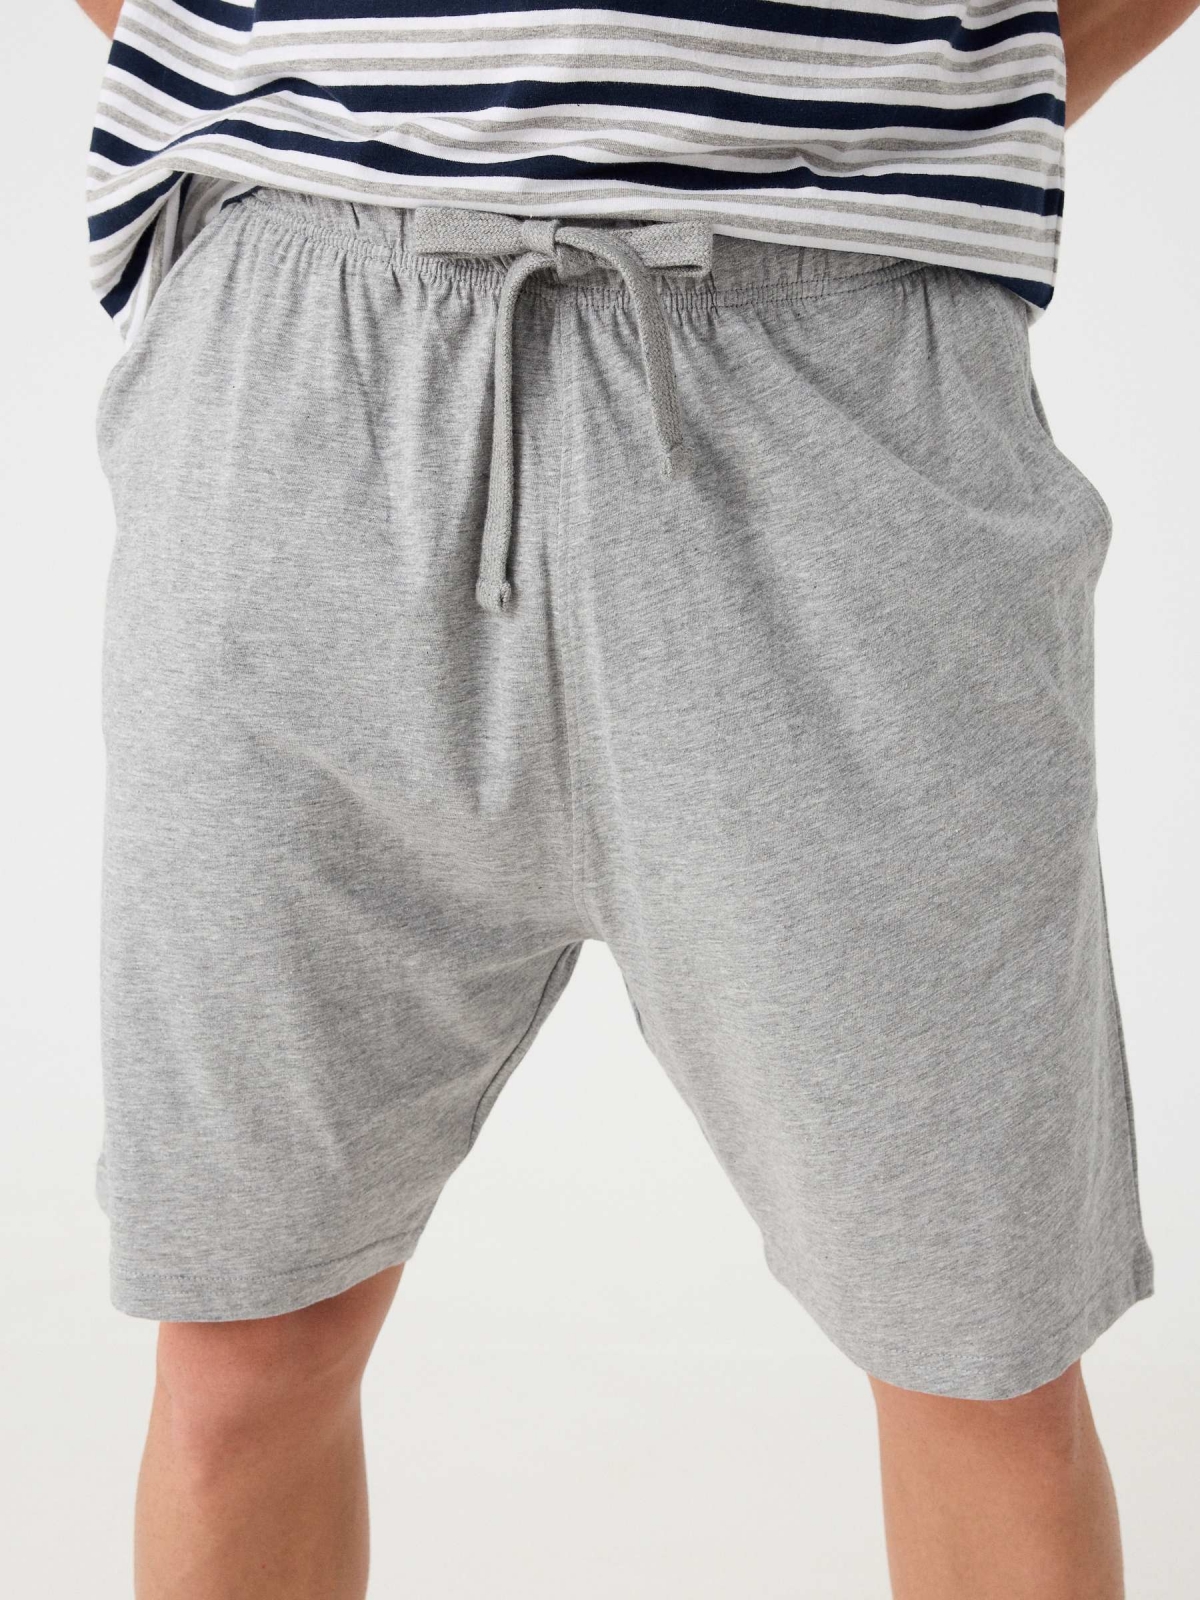 Pijama corto estampado rayas gris vista detalle